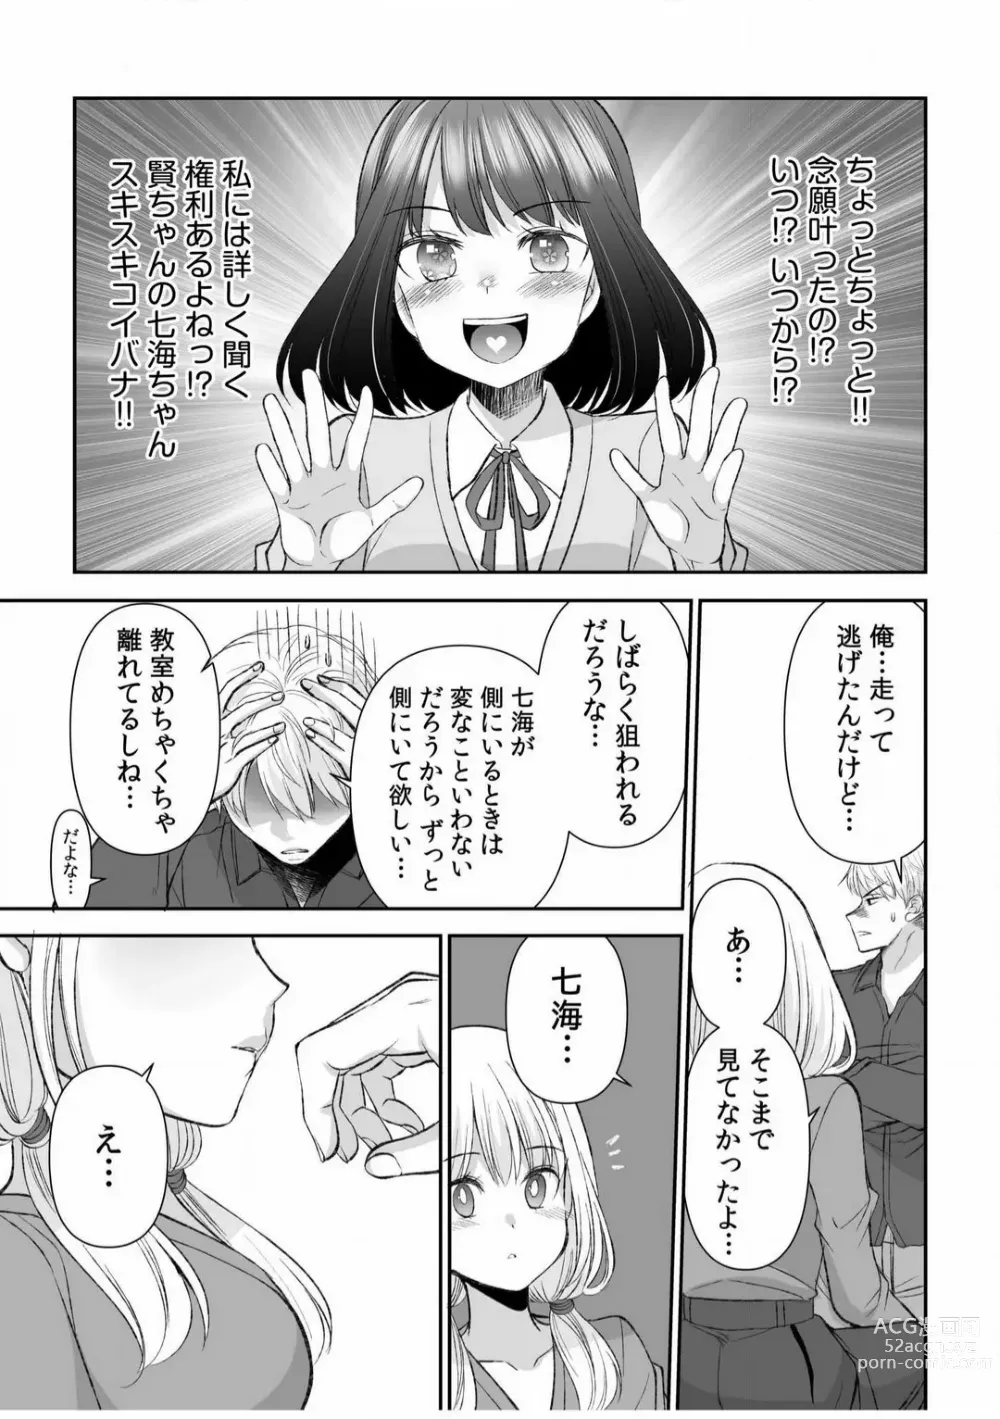 Page 235 of manga Yada... Naka Ippai Shinaide...